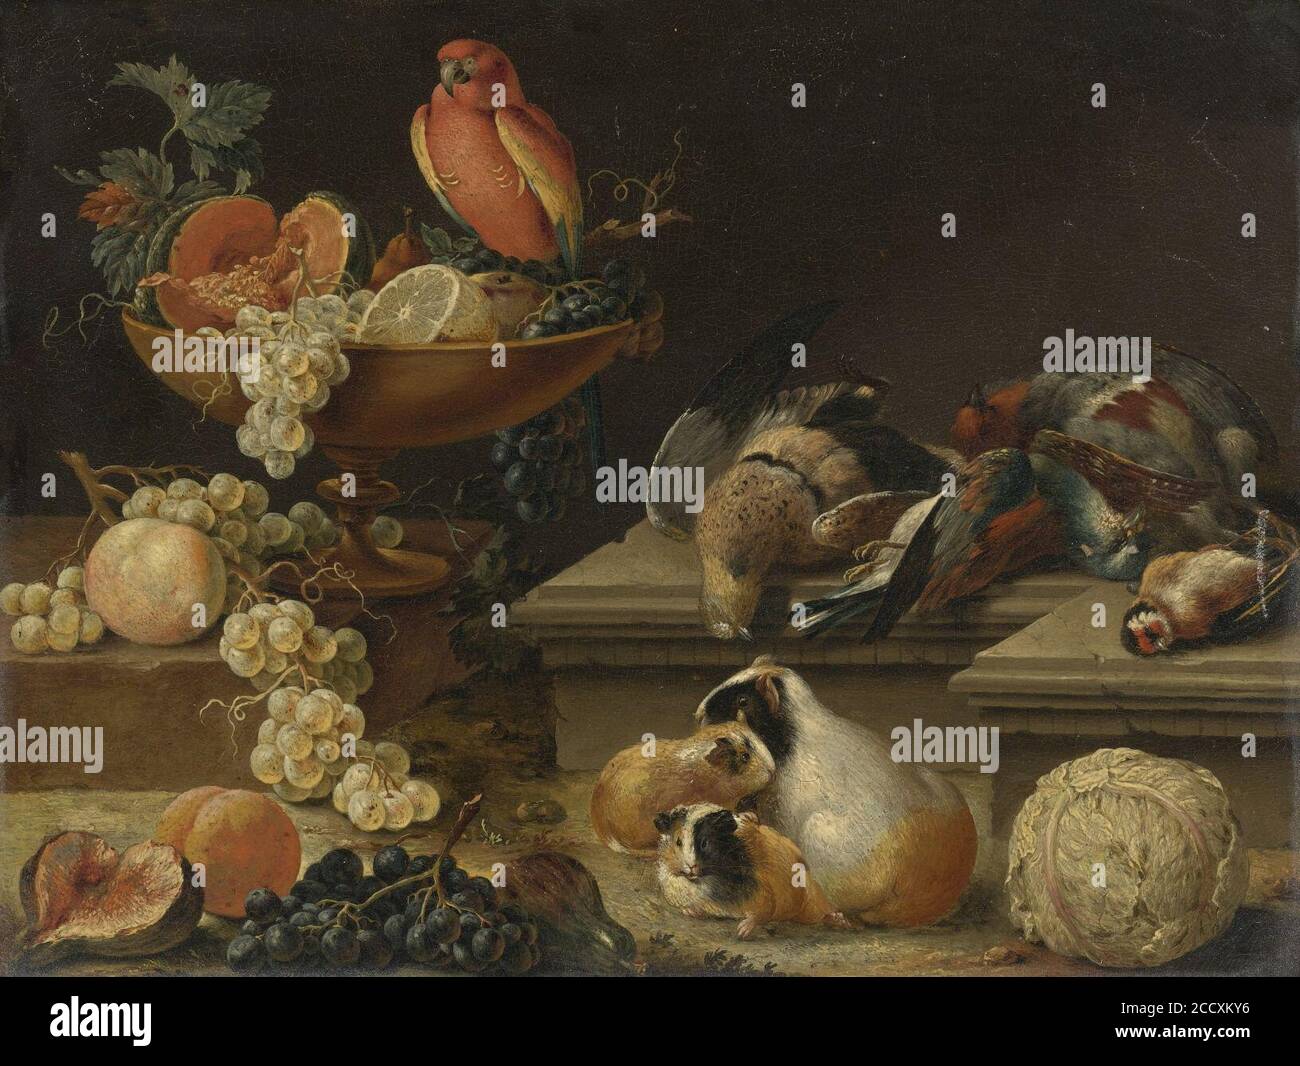 Johann Amandus Winck - Stilleben mit Papagei, Geflügel, Meerschweinchen und Obst. Stock Photo